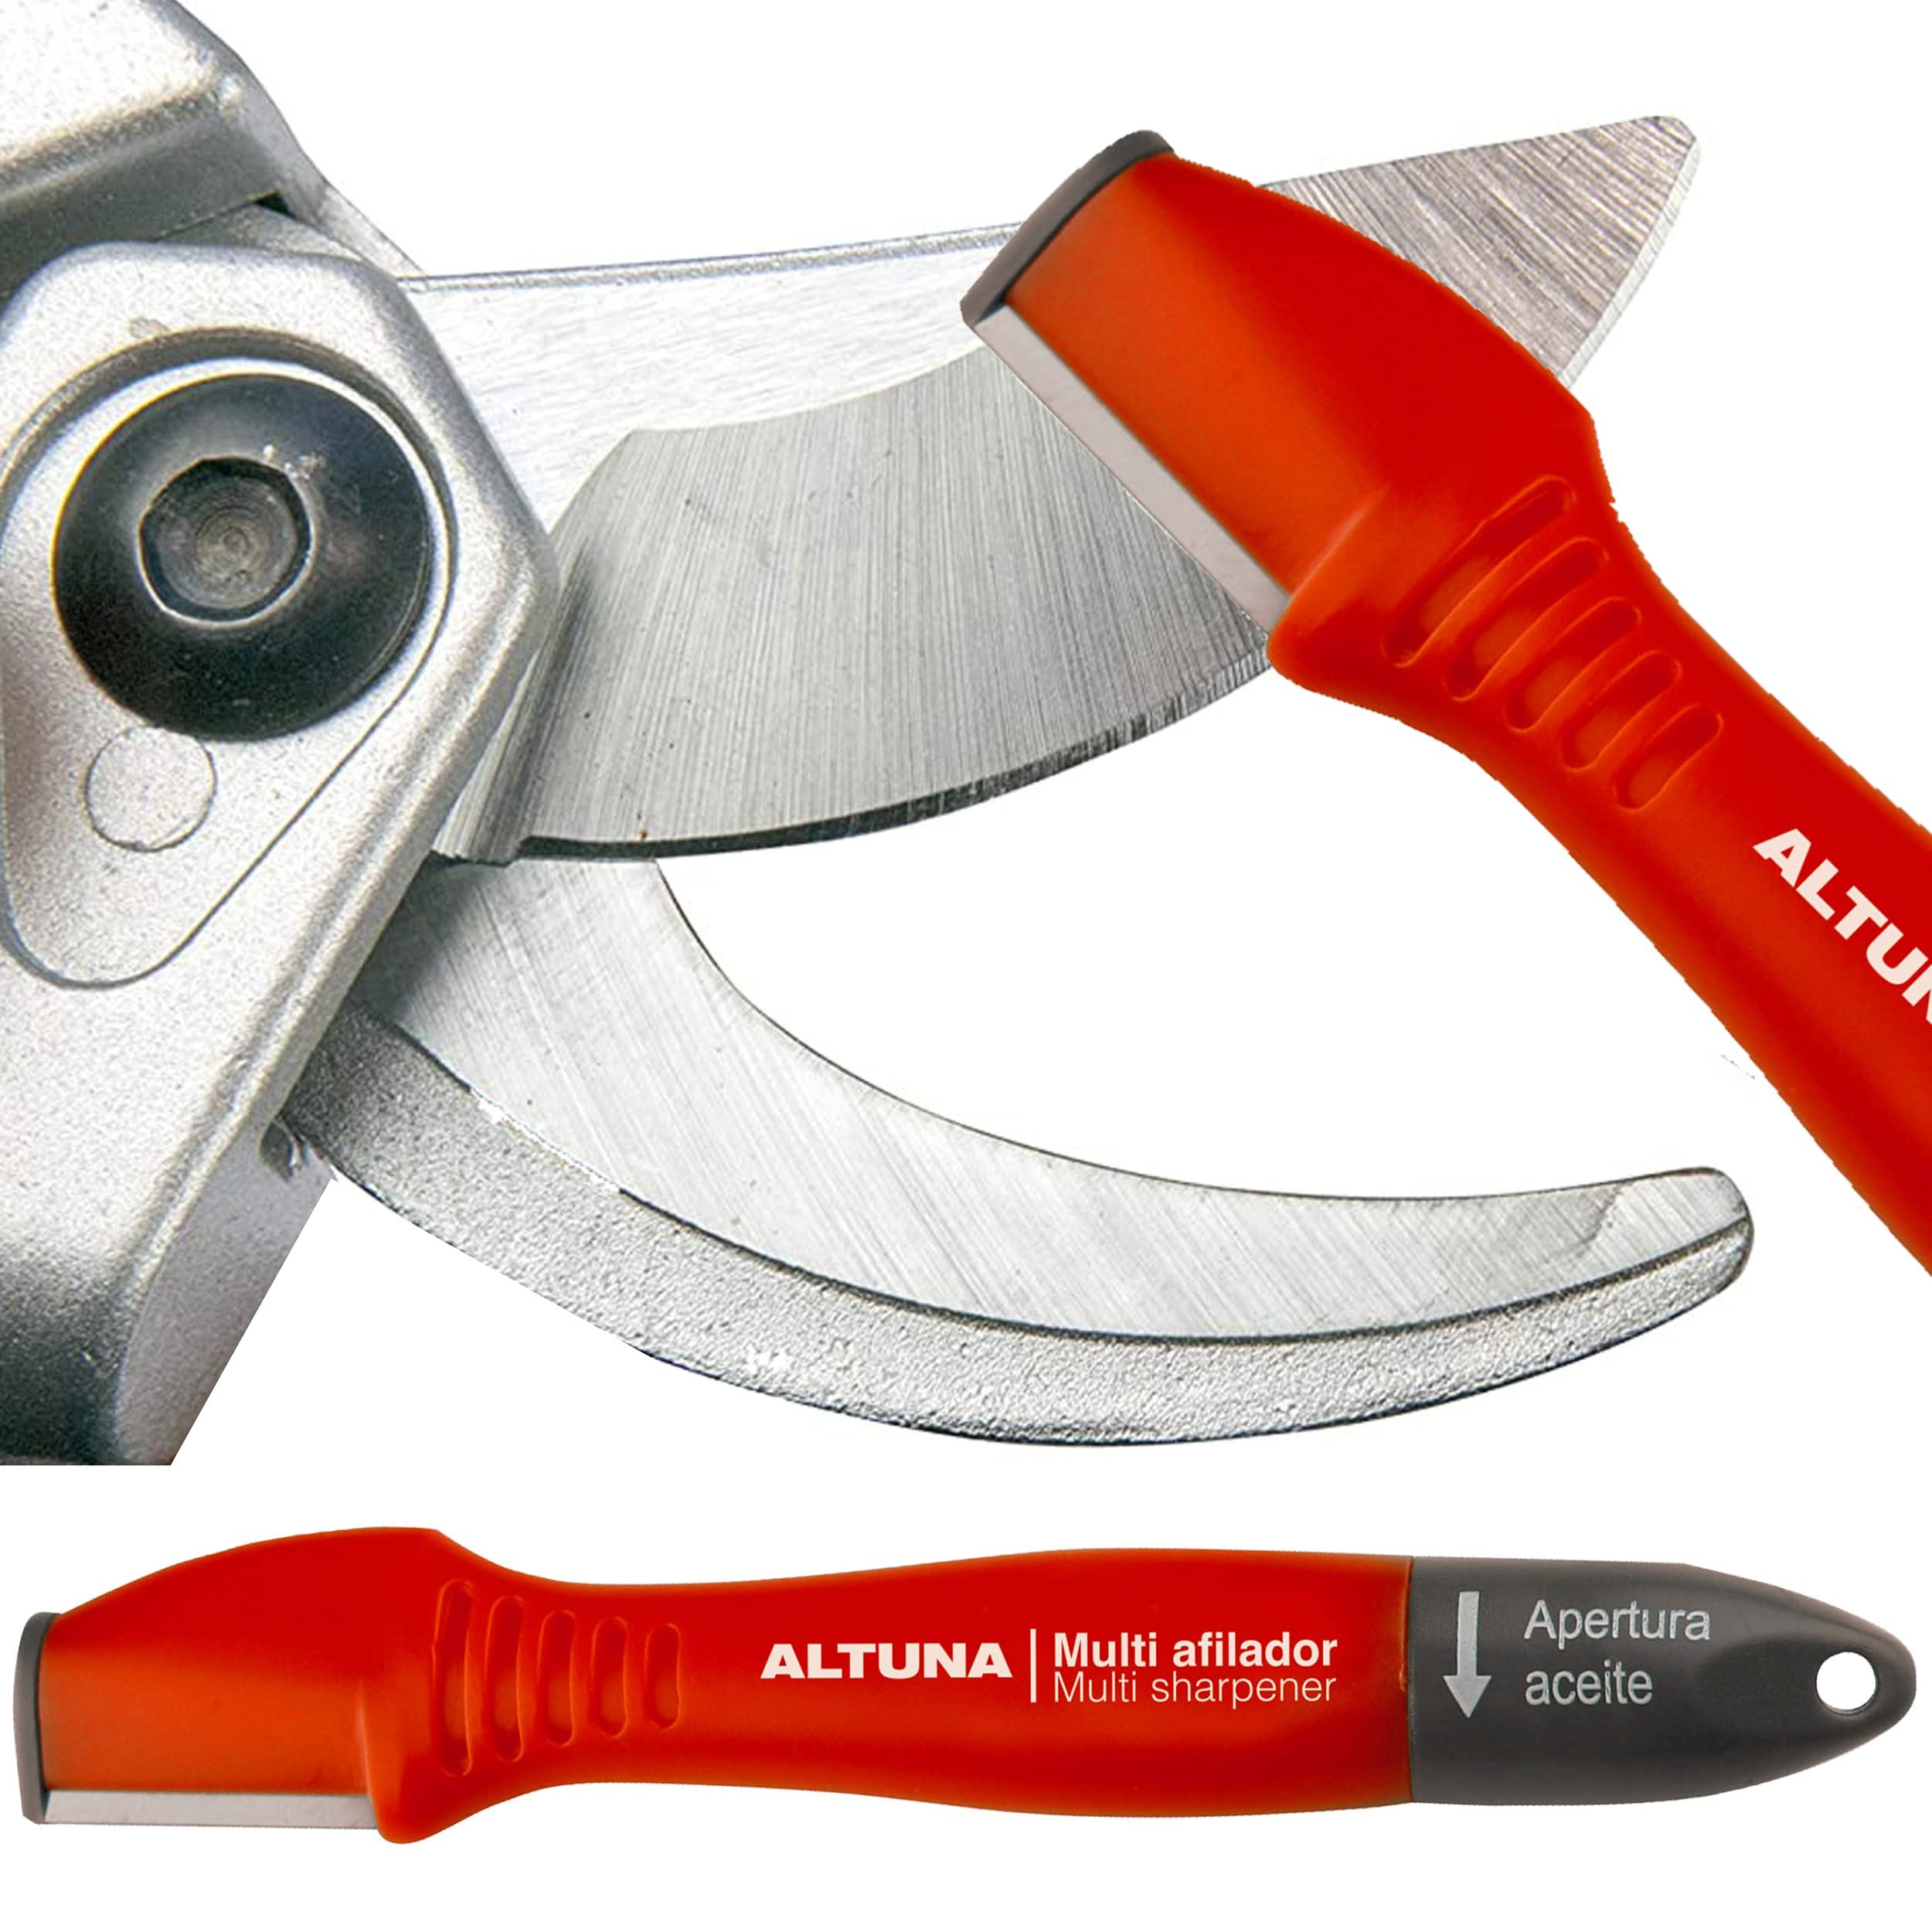 Altuna Pocket Blade Sharpener for Garden Tools